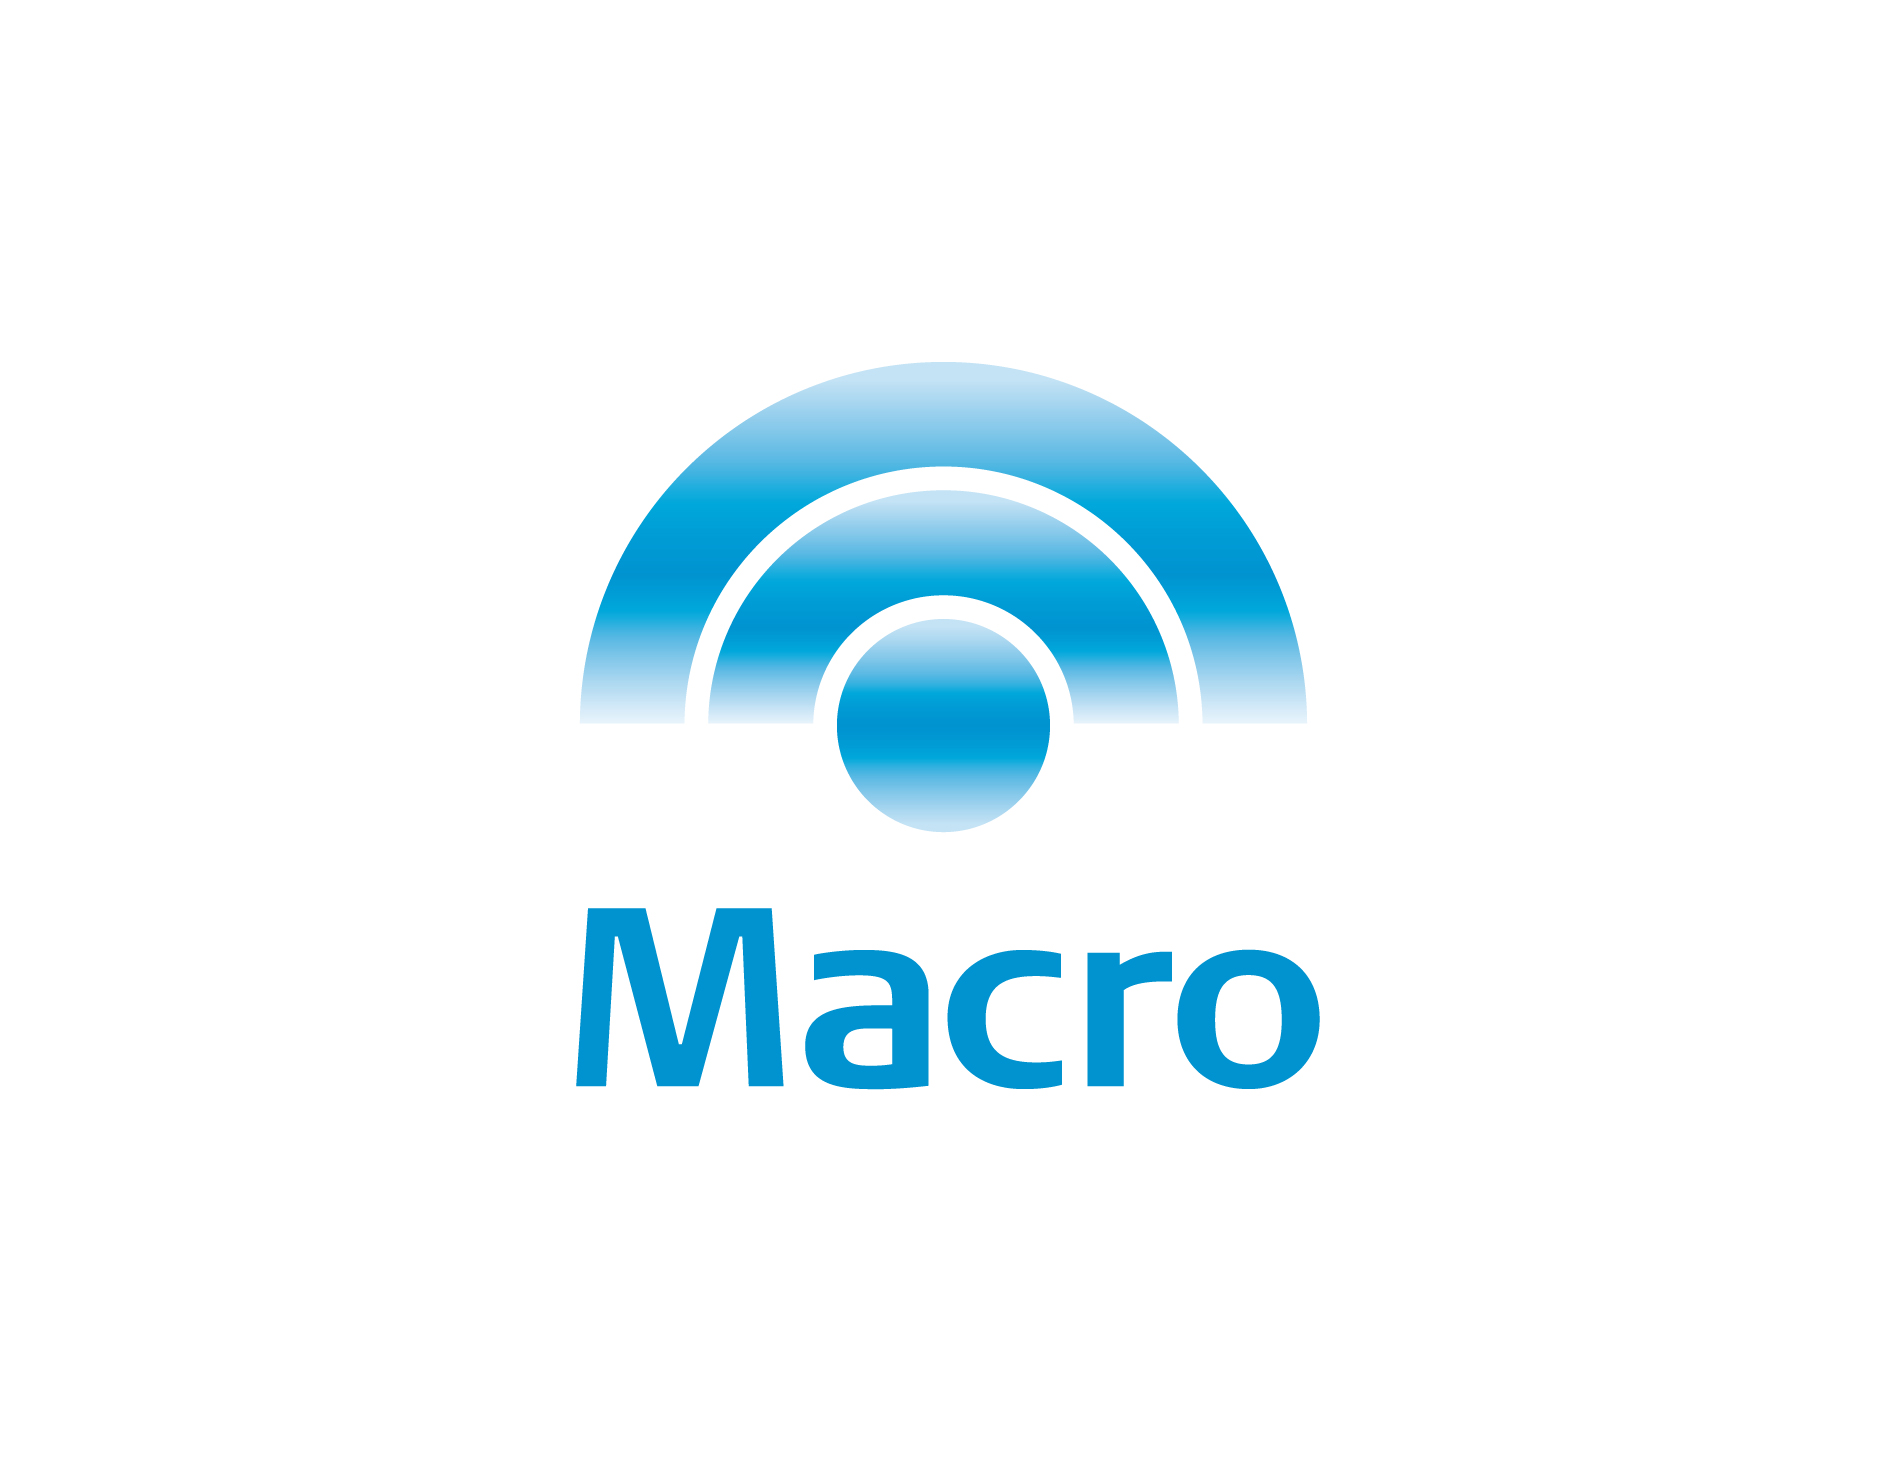 Banco-Macro-6